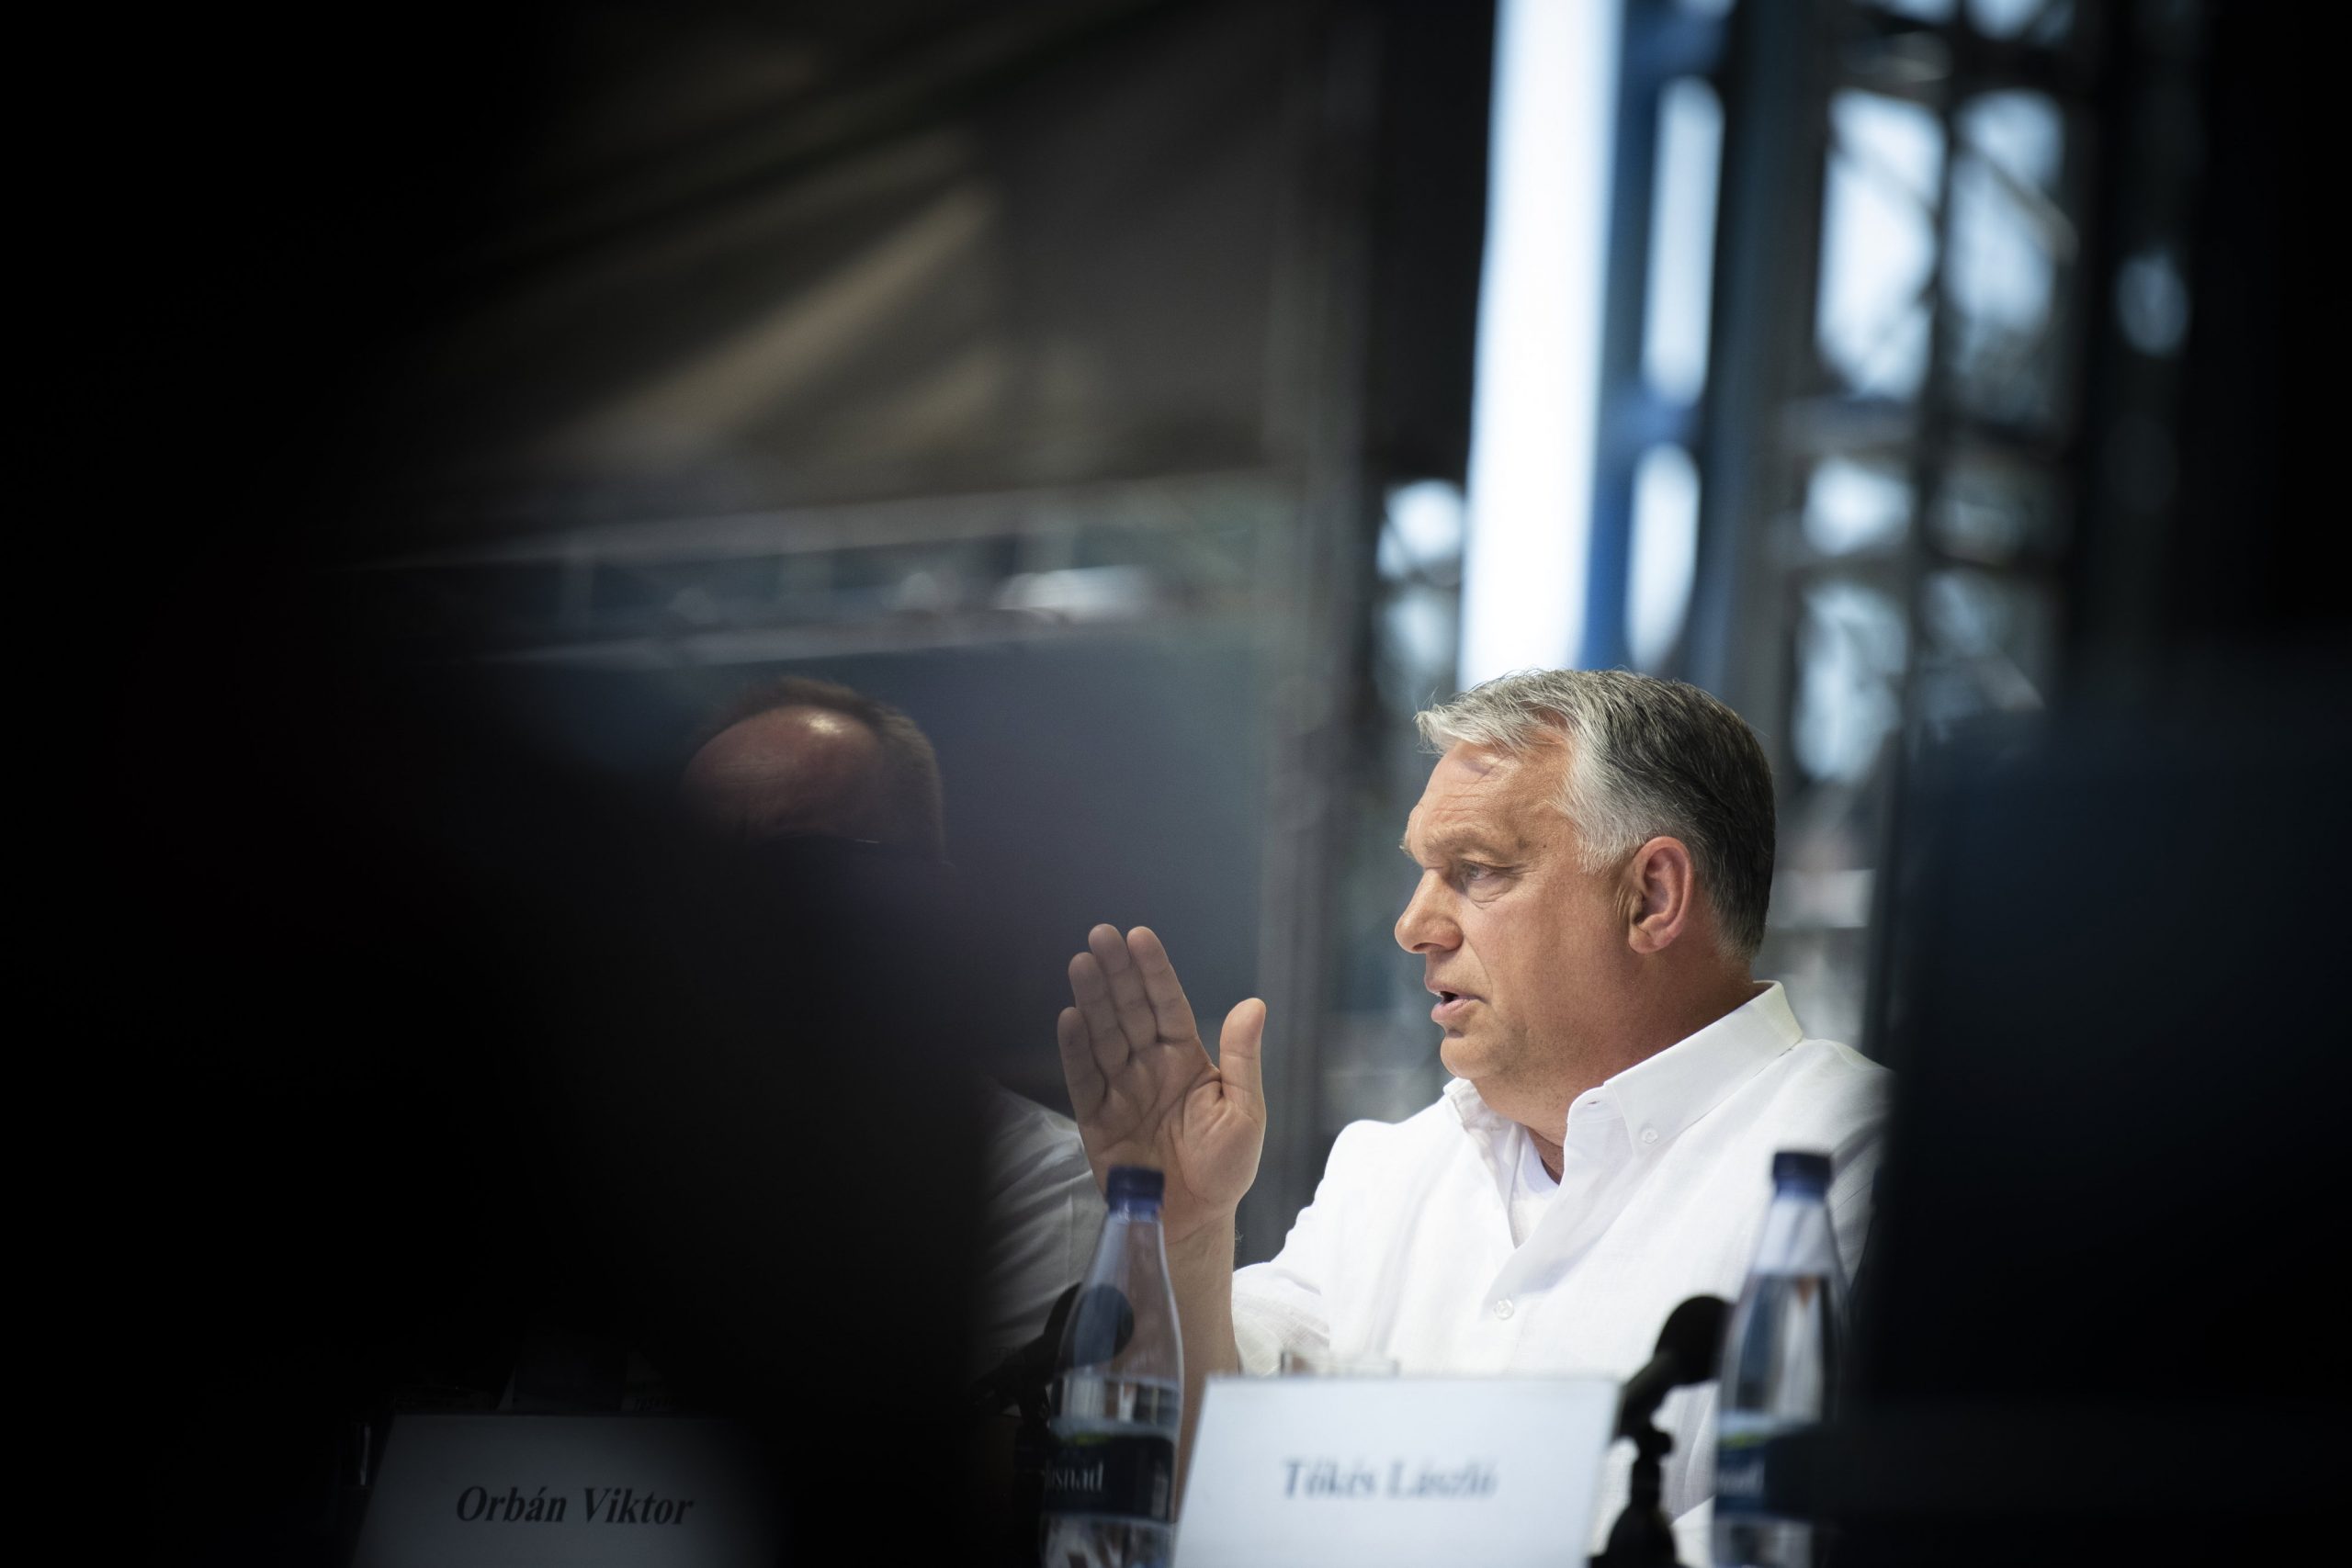 Viktor Orbán przedstawia swoją wizję przyszłości Węgier w dekadzie konfliktu